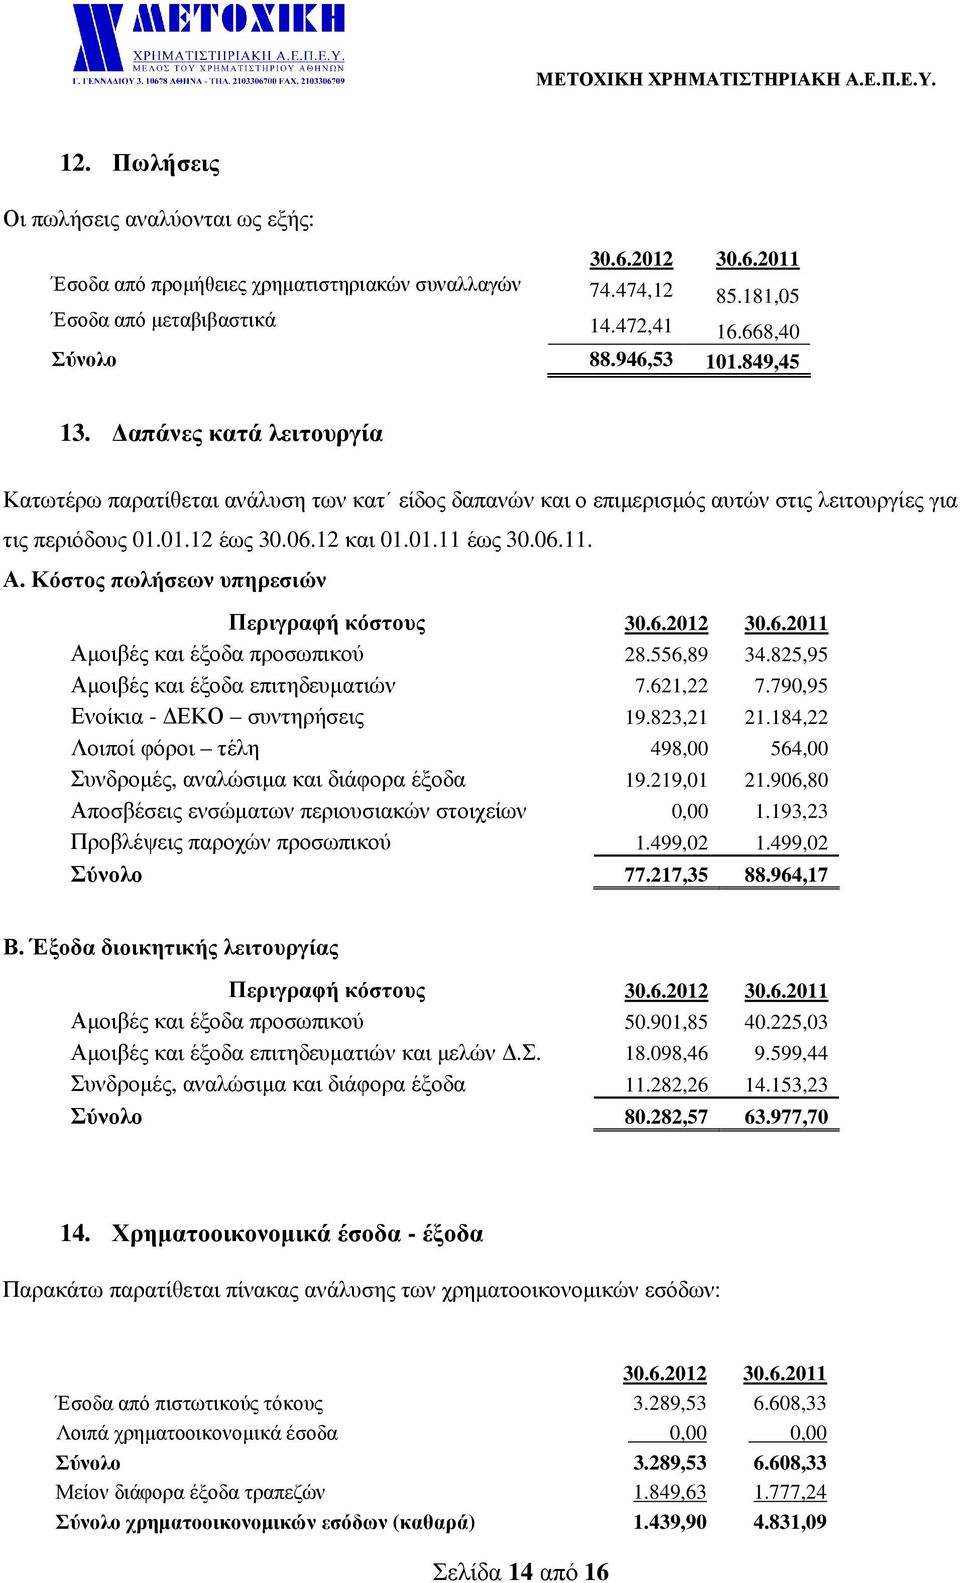 Κόστος πωλήσεων υπηρεσιών Περιγραφή κόστους 30.6.2012 30.6.2011 Αµοιβές και έξοδα προσωπικού 28.556,89 34.825,95 Αµοιβές και έξοδα επιτηδευµατιών 7.621,22 7.790,95 Ενοίκια - ΕΚΟ συντηρήσεις 19.